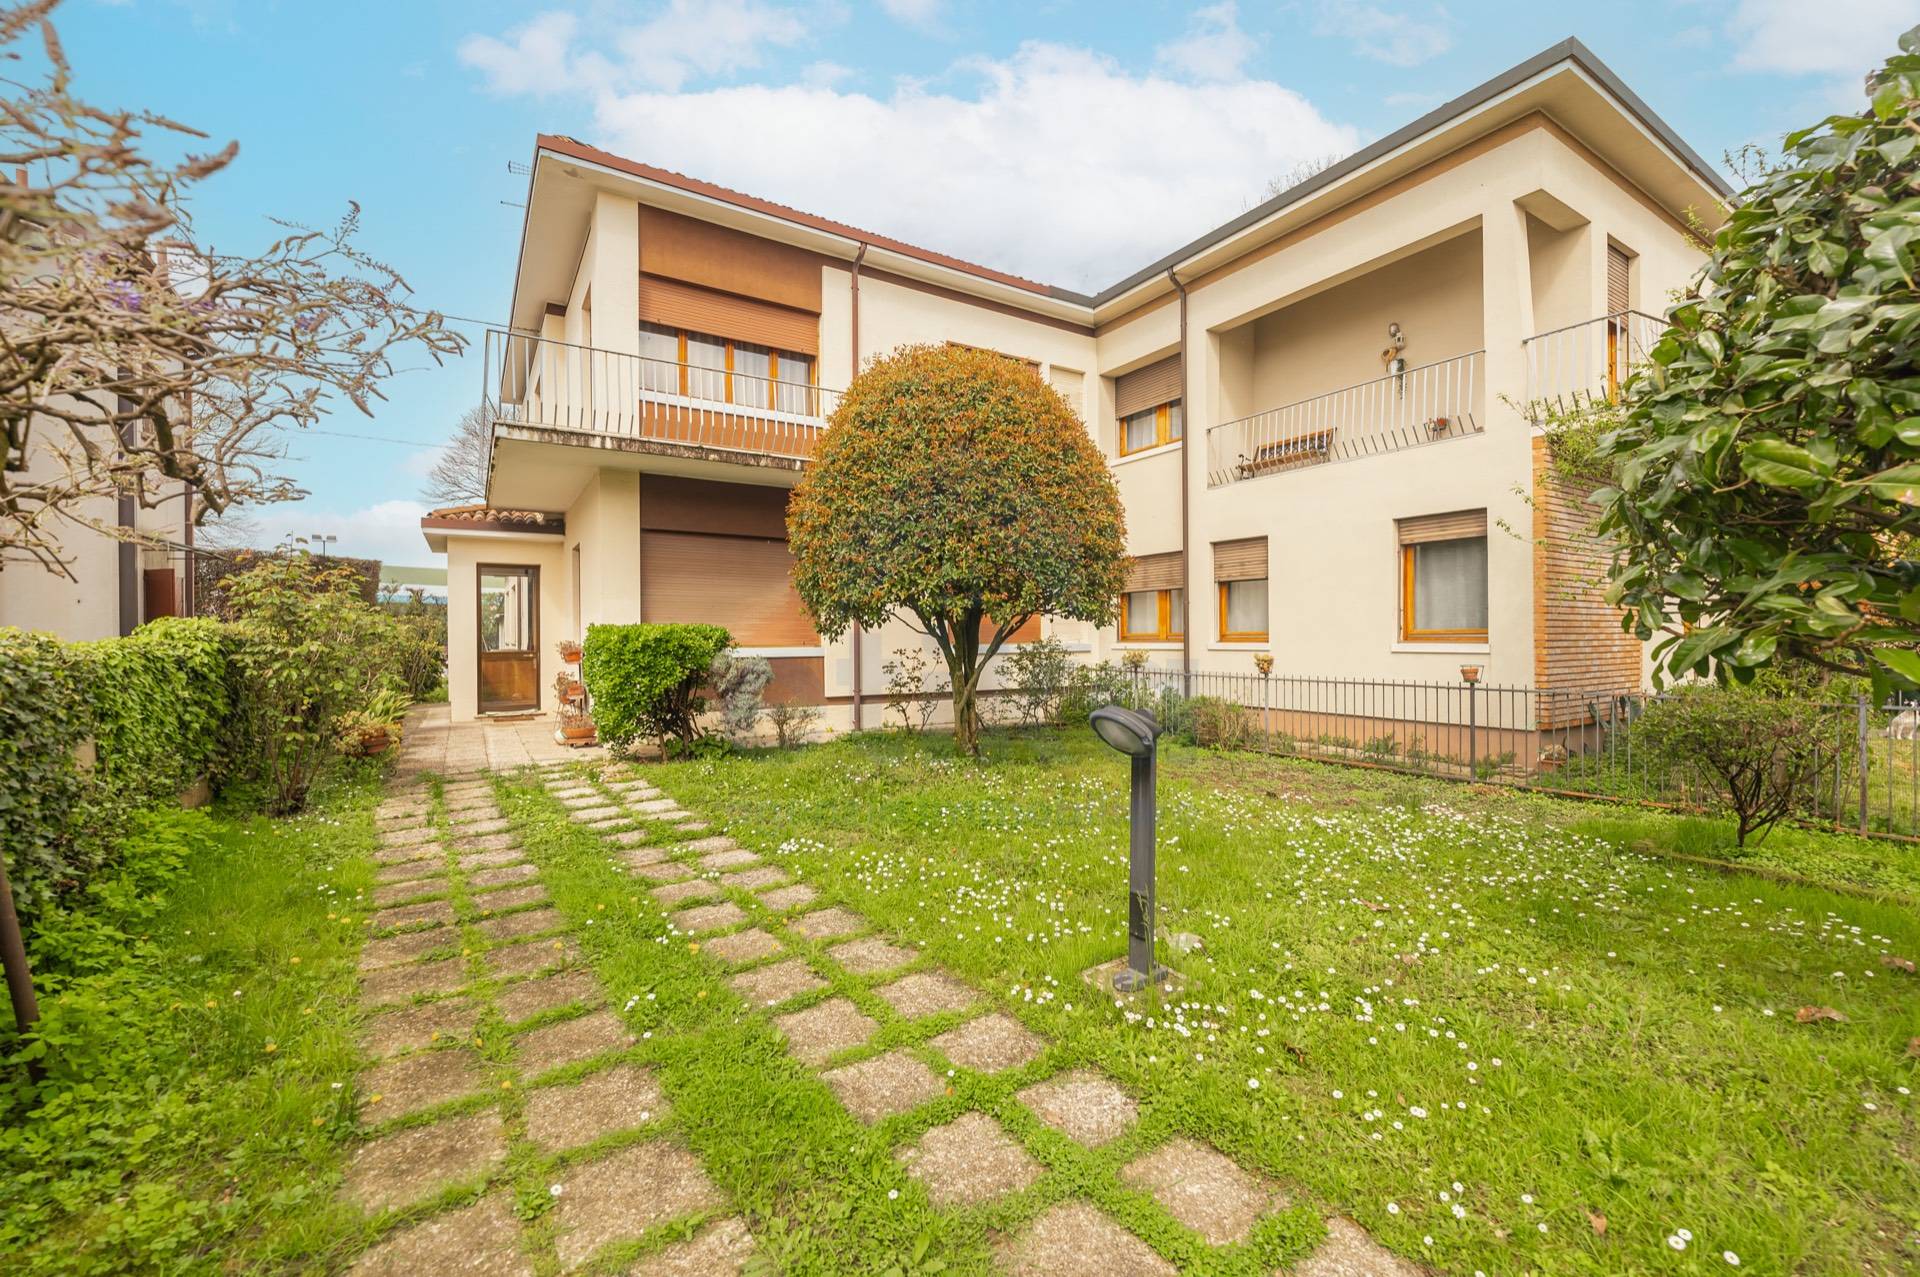 Villa Bifamiliare in vendita a Treviso, 7 locali, zona Località: FuoriMura, prezzo € 260.000 | PortaleAgenzieImmobiliari.it